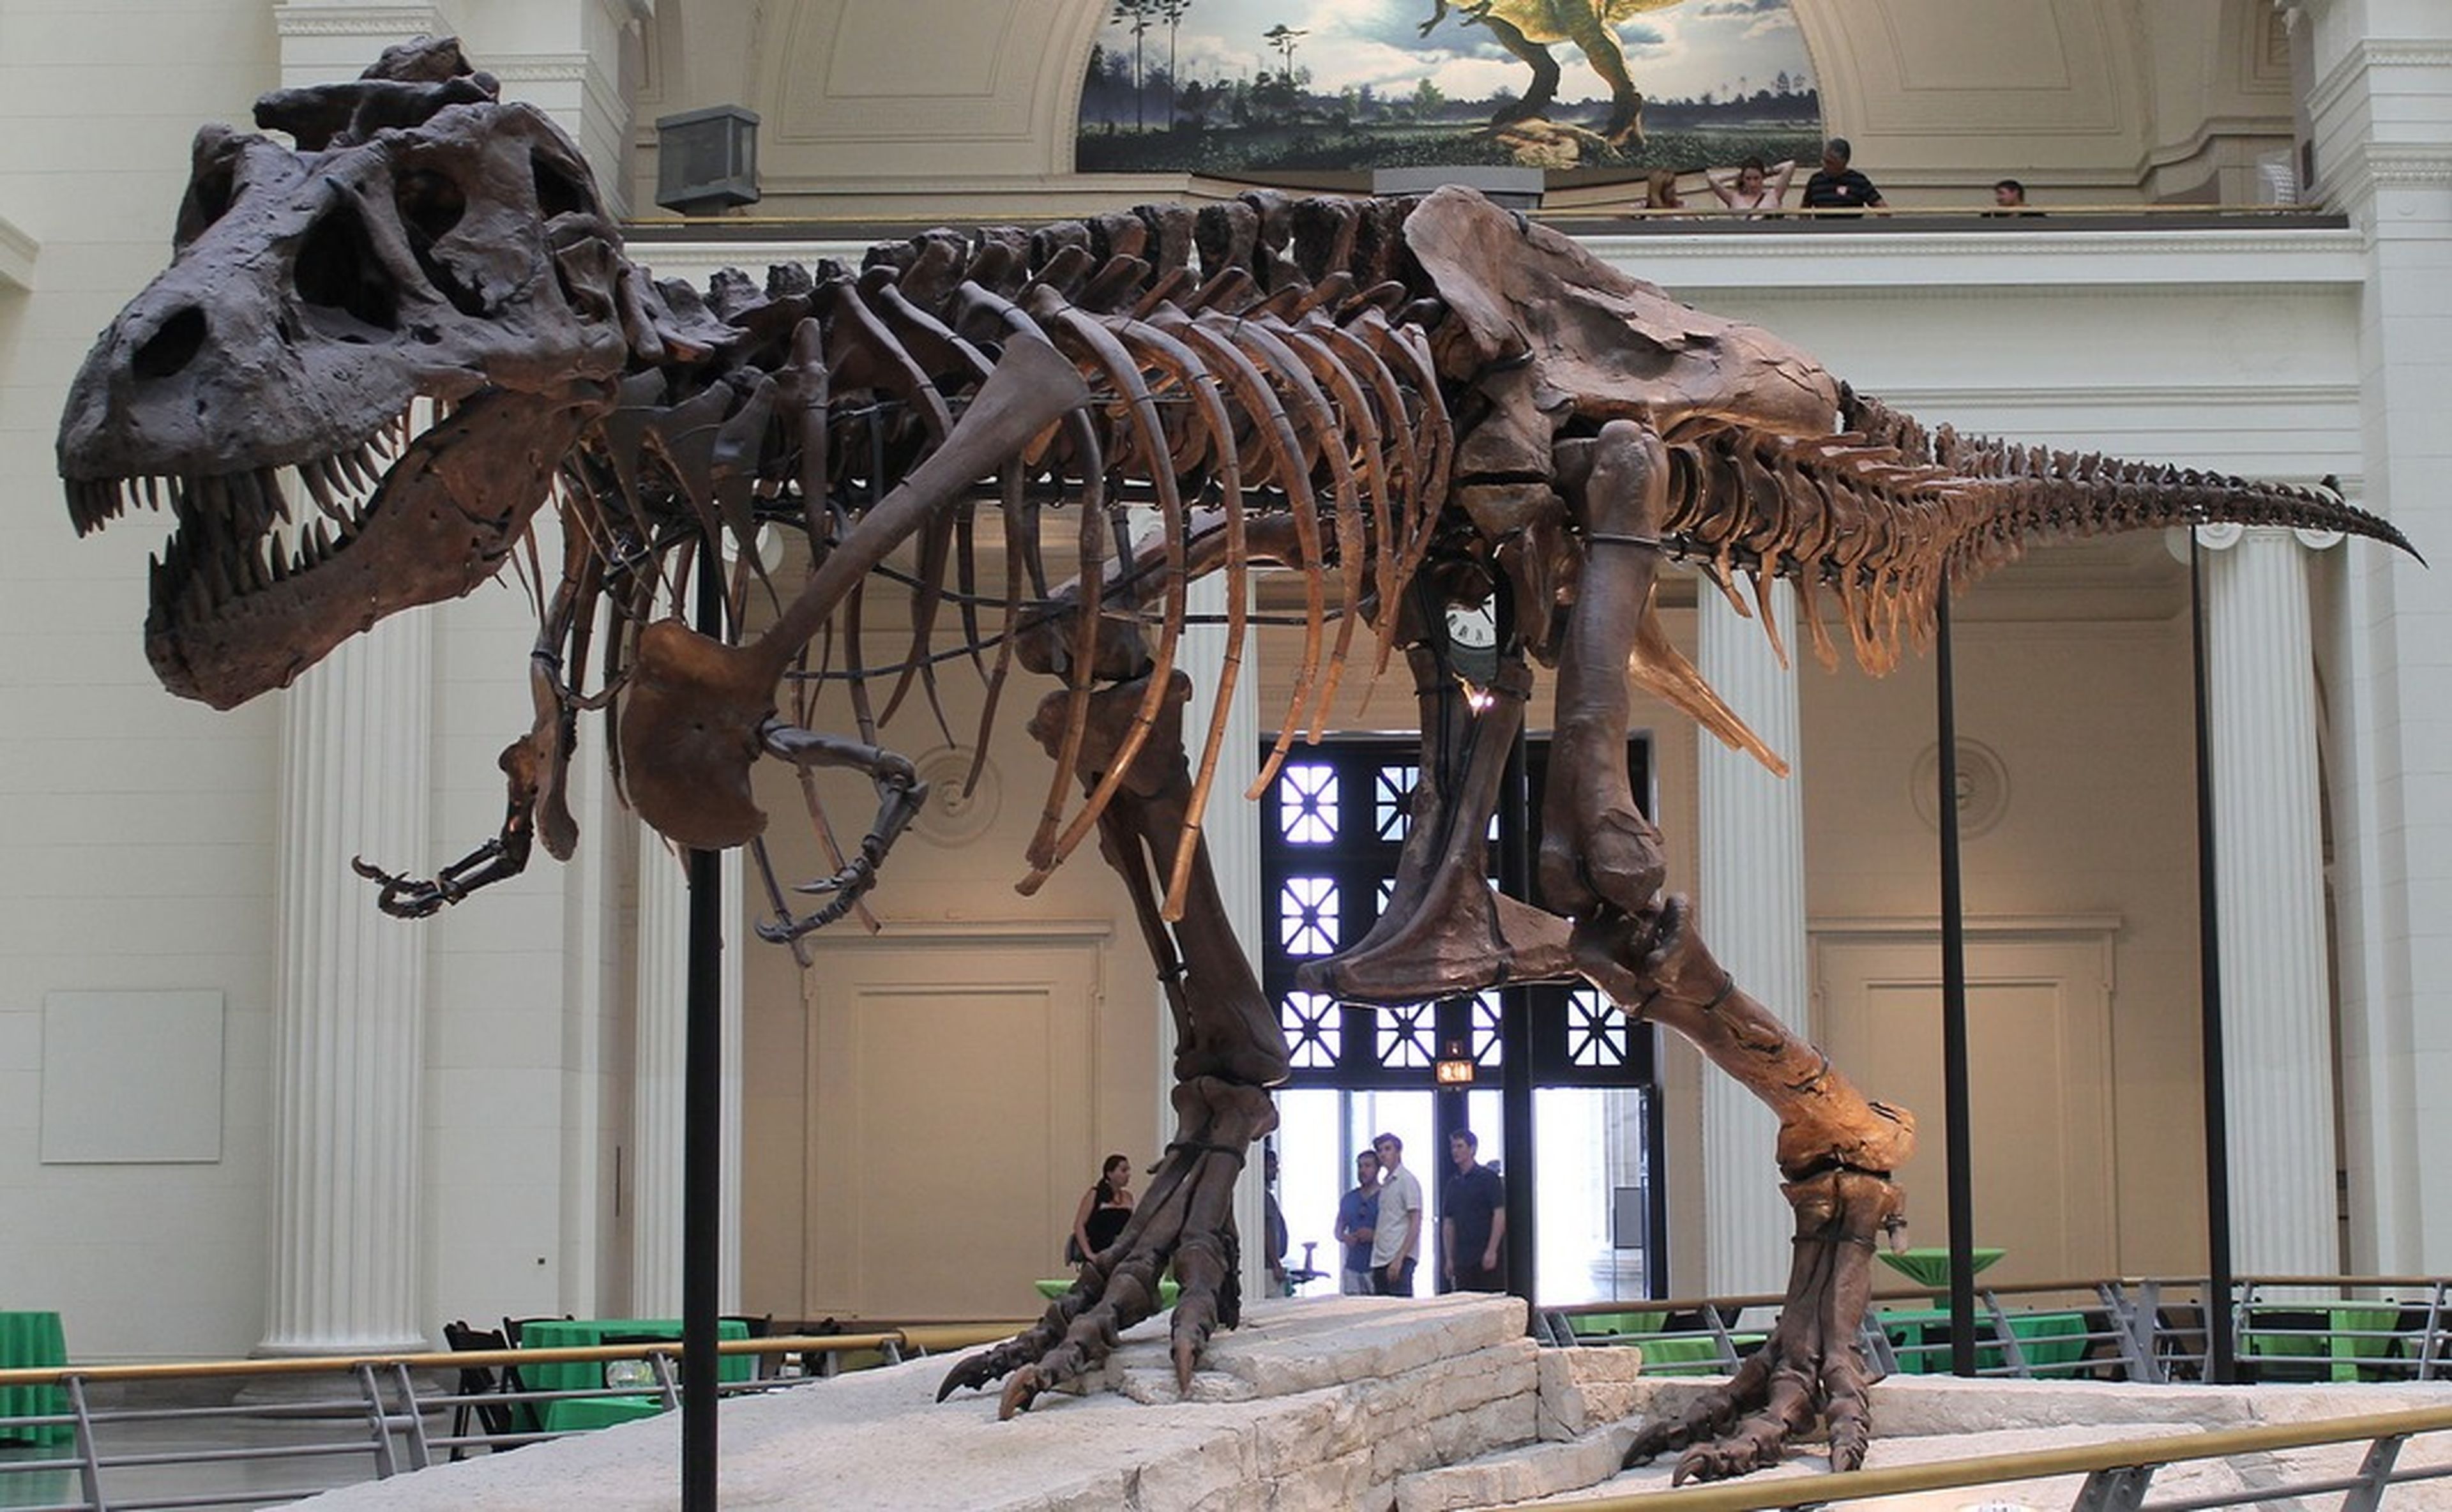 Mitos del Tyrannosaurus Rex, ¿cómo eran realmente los T-Rex?